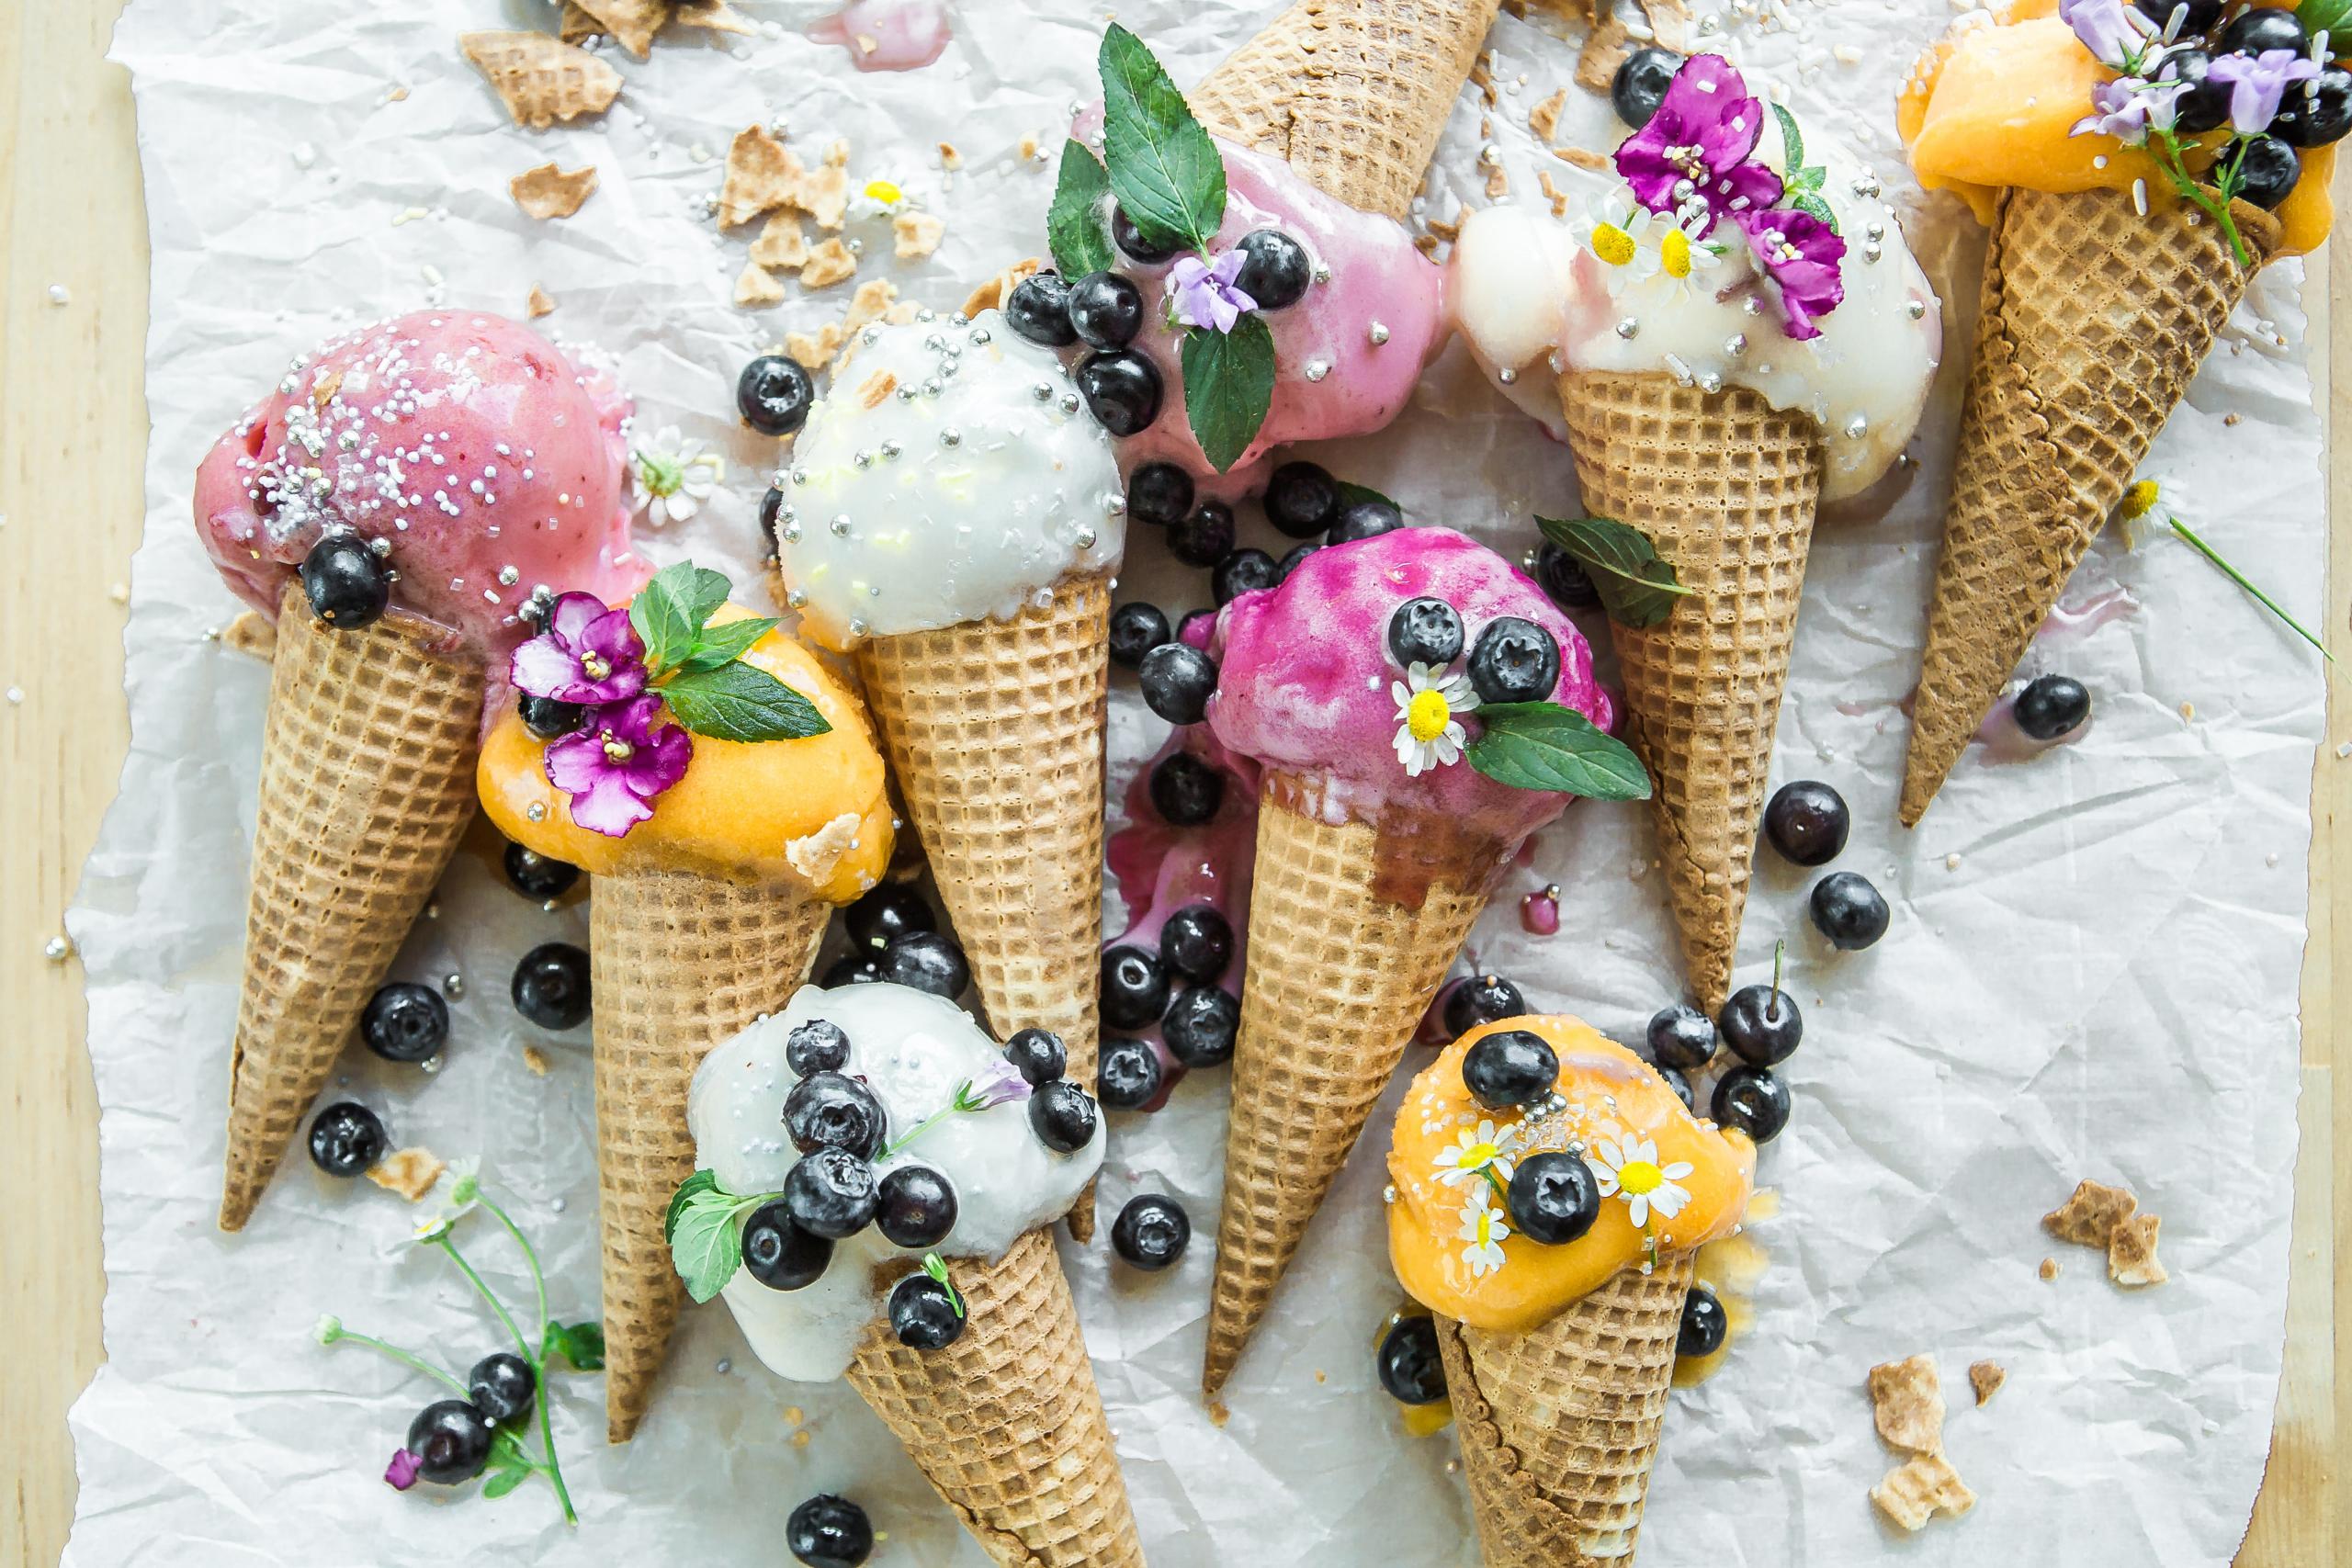 Zmrzlina není jenom kopečková aneb Jak se servíruje ve světě? | Apetit  Online